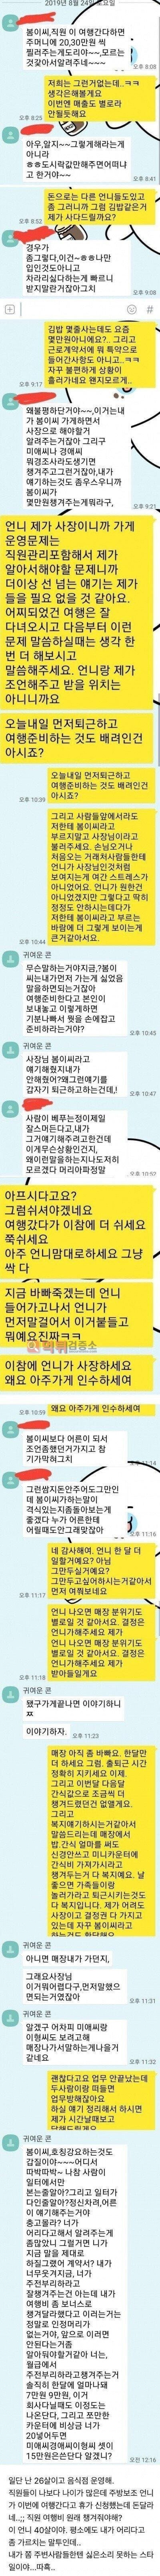 먹튀검증소 유머 김밥집 운영하는 20대 여사장의 고충